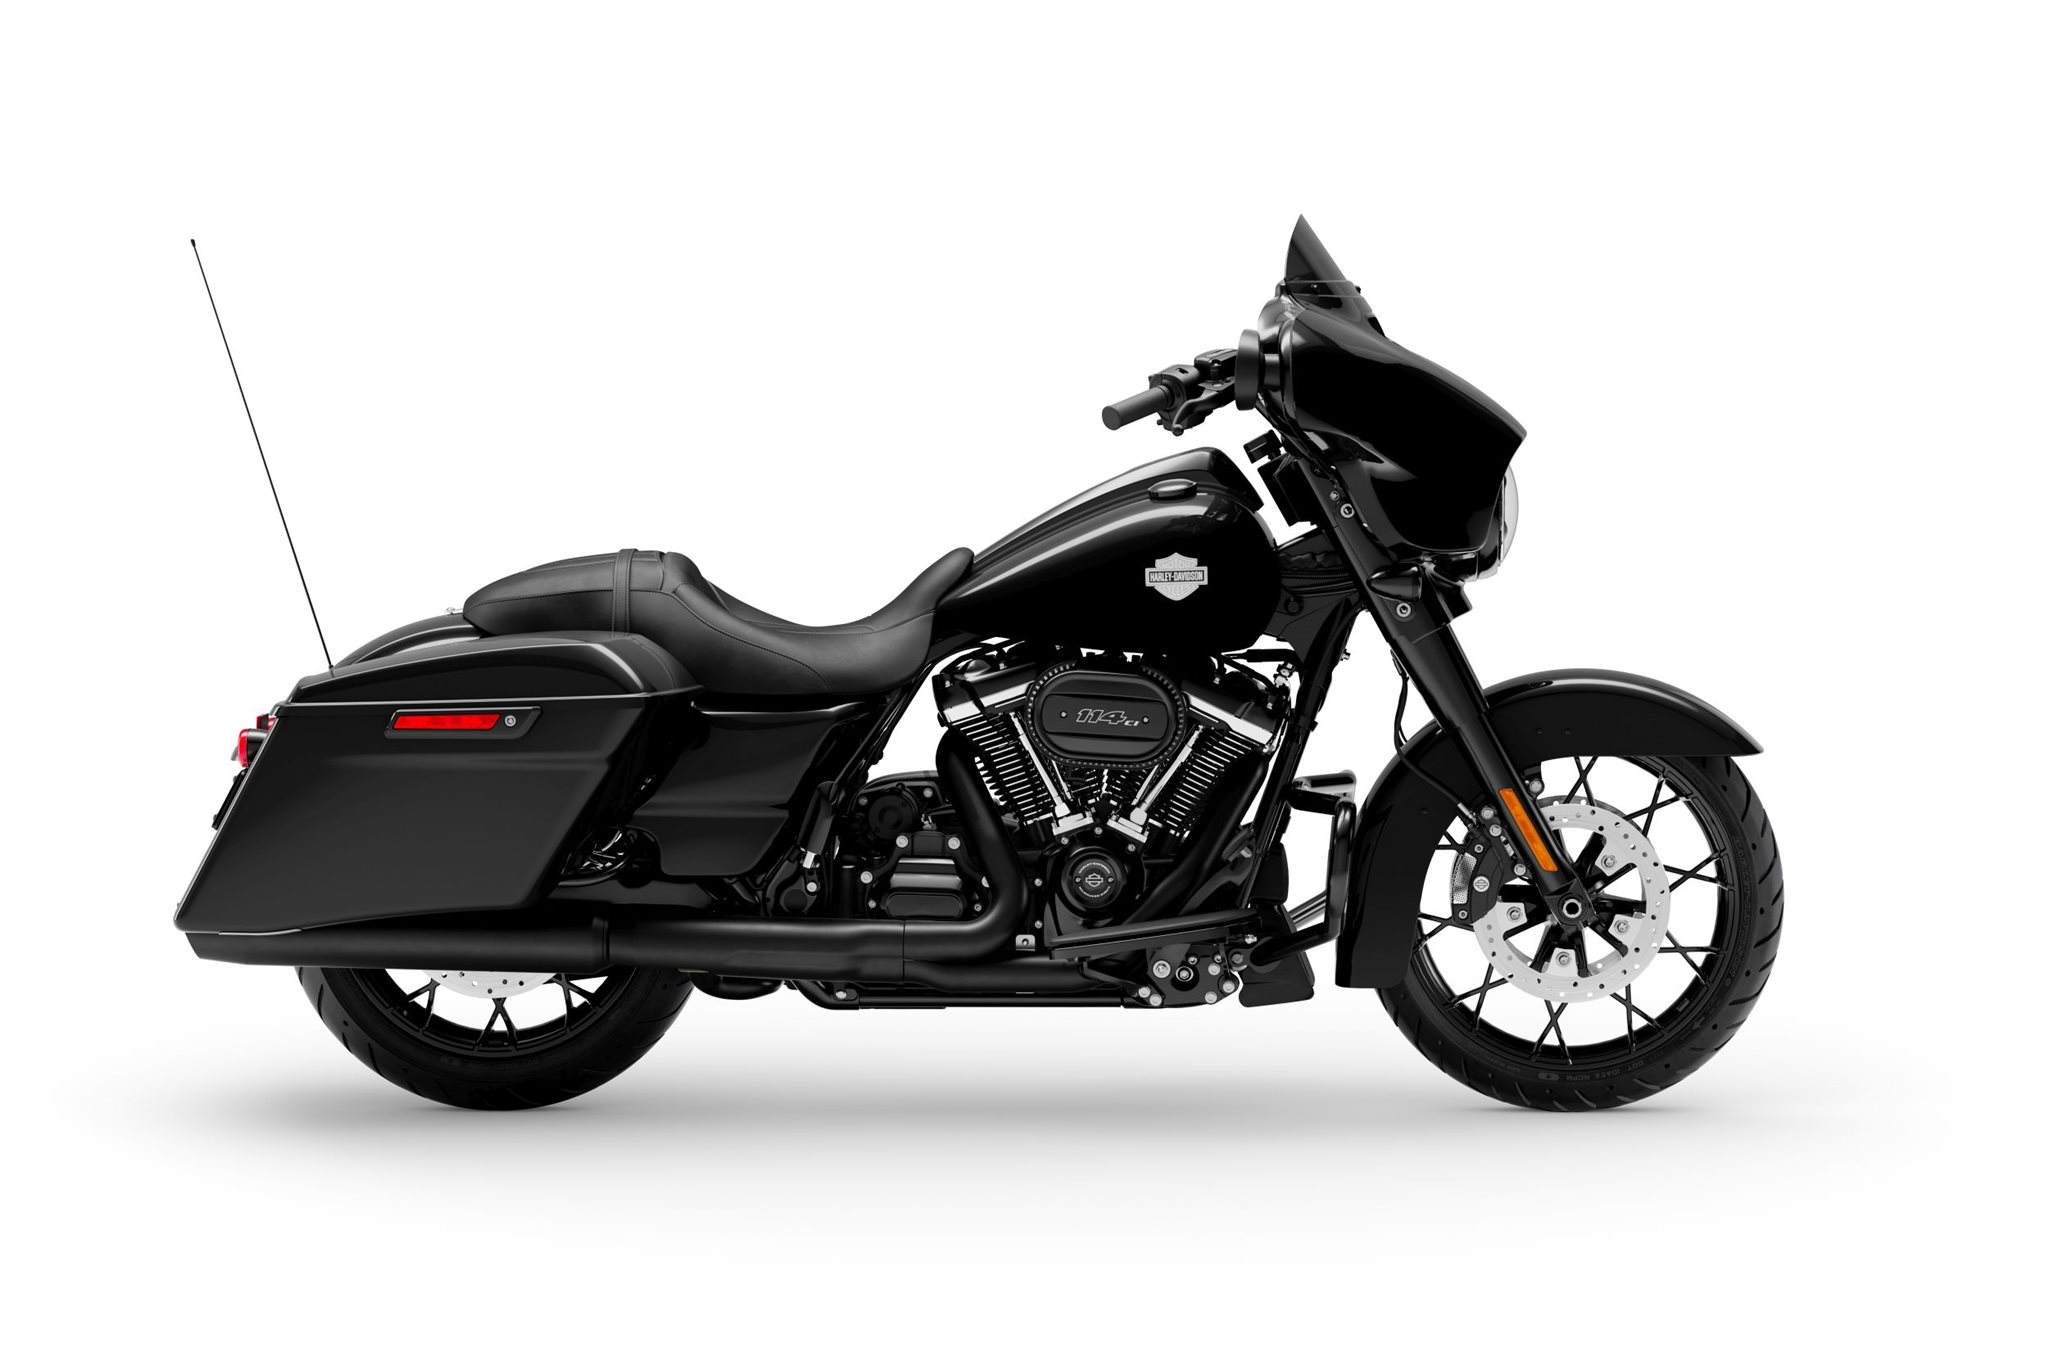 Motorrad Vergleich Harley Davidson Touring Street Glide Special Flhxs 2020 Vs Harley Davidson Touring Street Glide Special Flhxs 2021